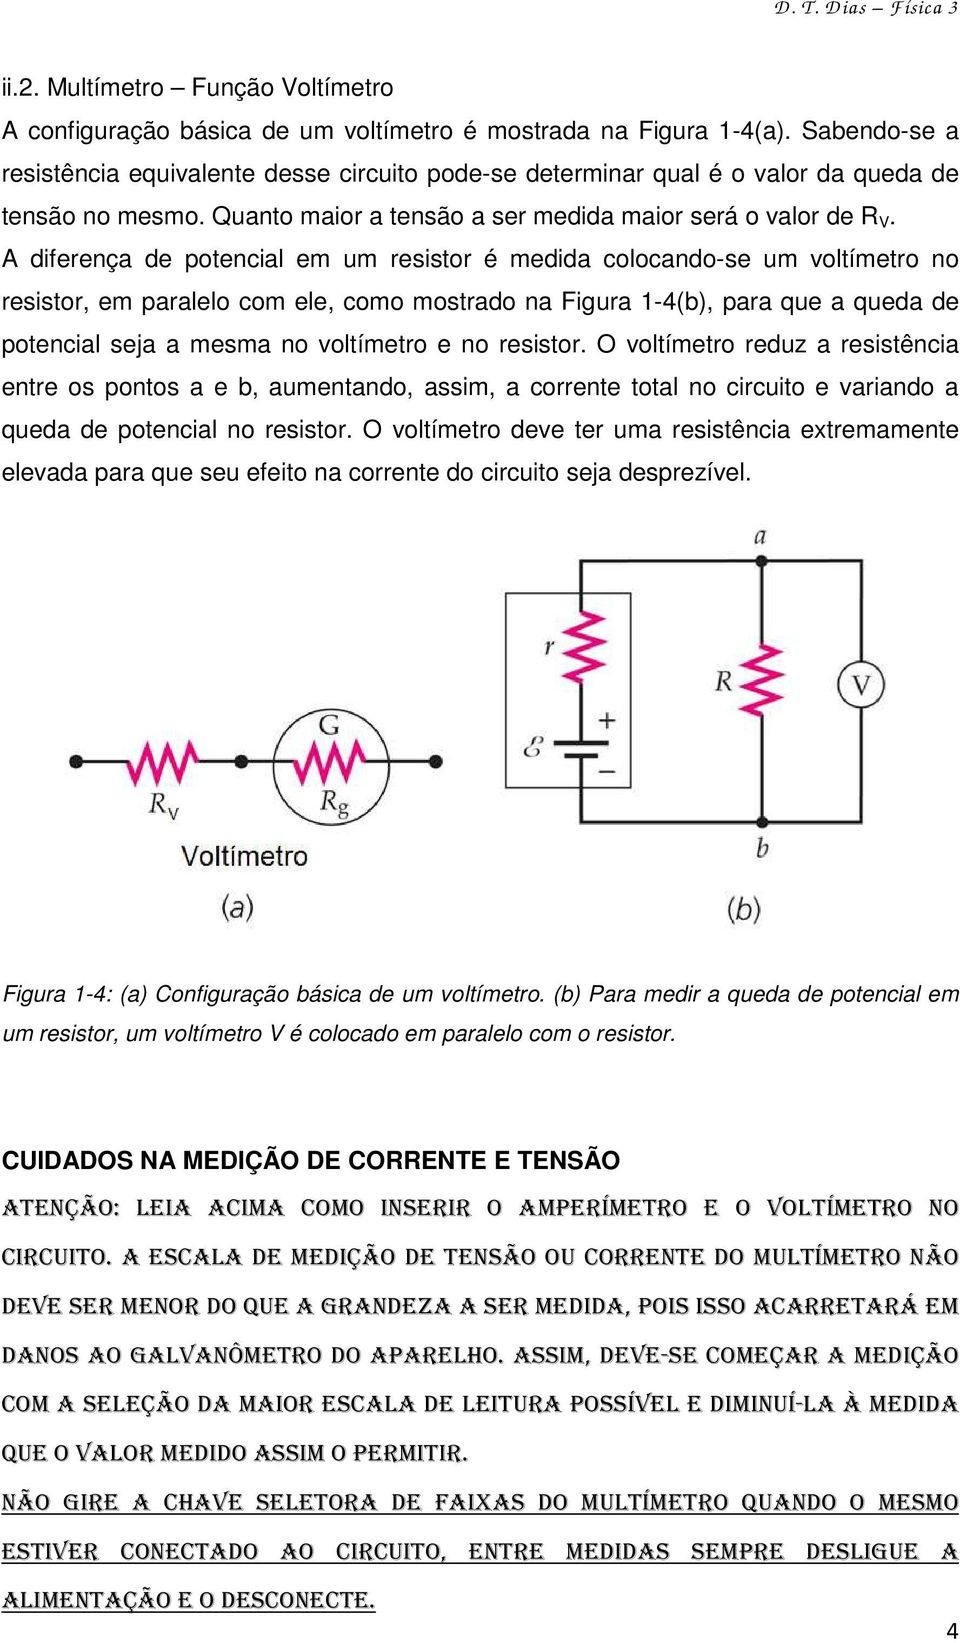 A diferença de potencial em um resistor é medida colocando-se um voltímetro no resistor, em paralelo com ele, como mostrado na Figura 1-4(b), para que a queda de potencial seja a mesma no voltímetro